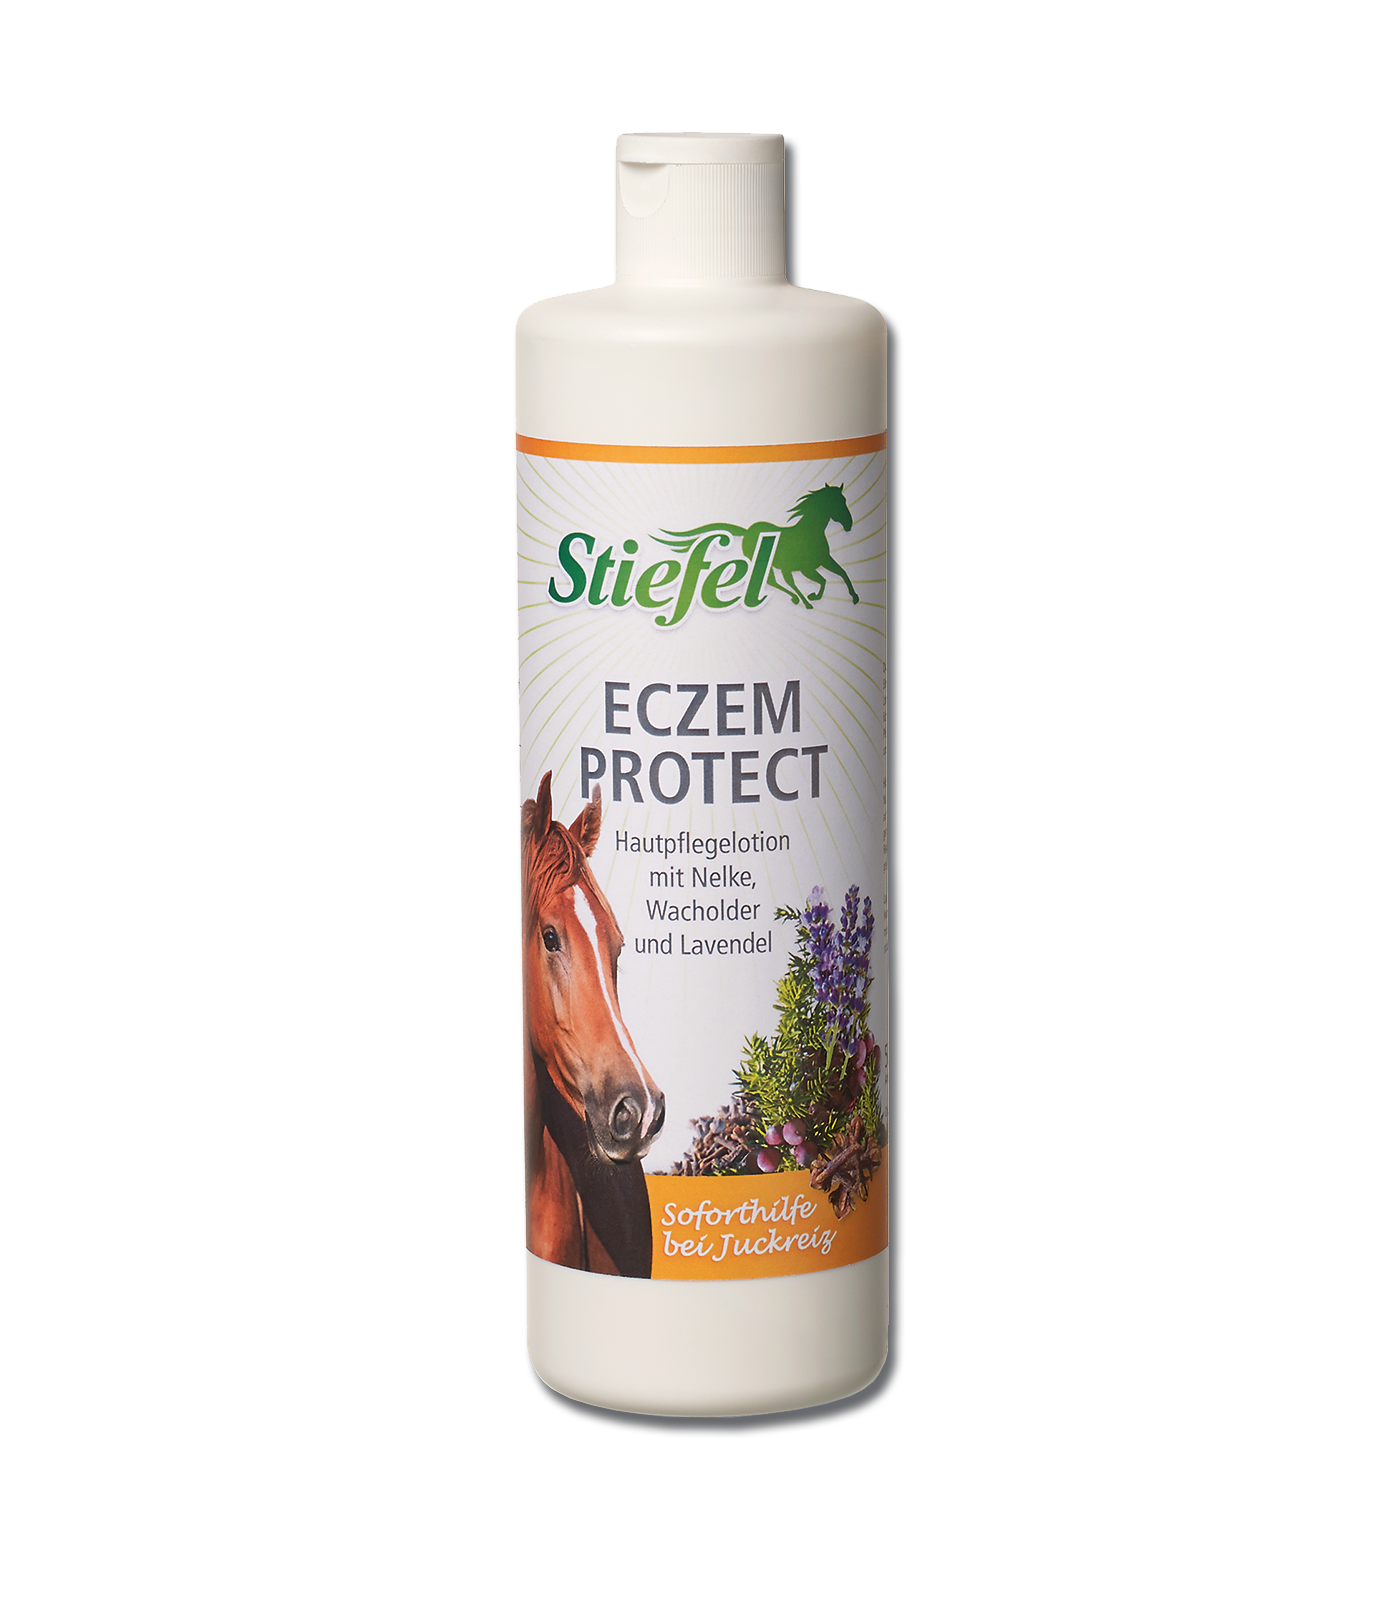 Eczemprotect Stiefel - un aiuto immediato in caso di prurito